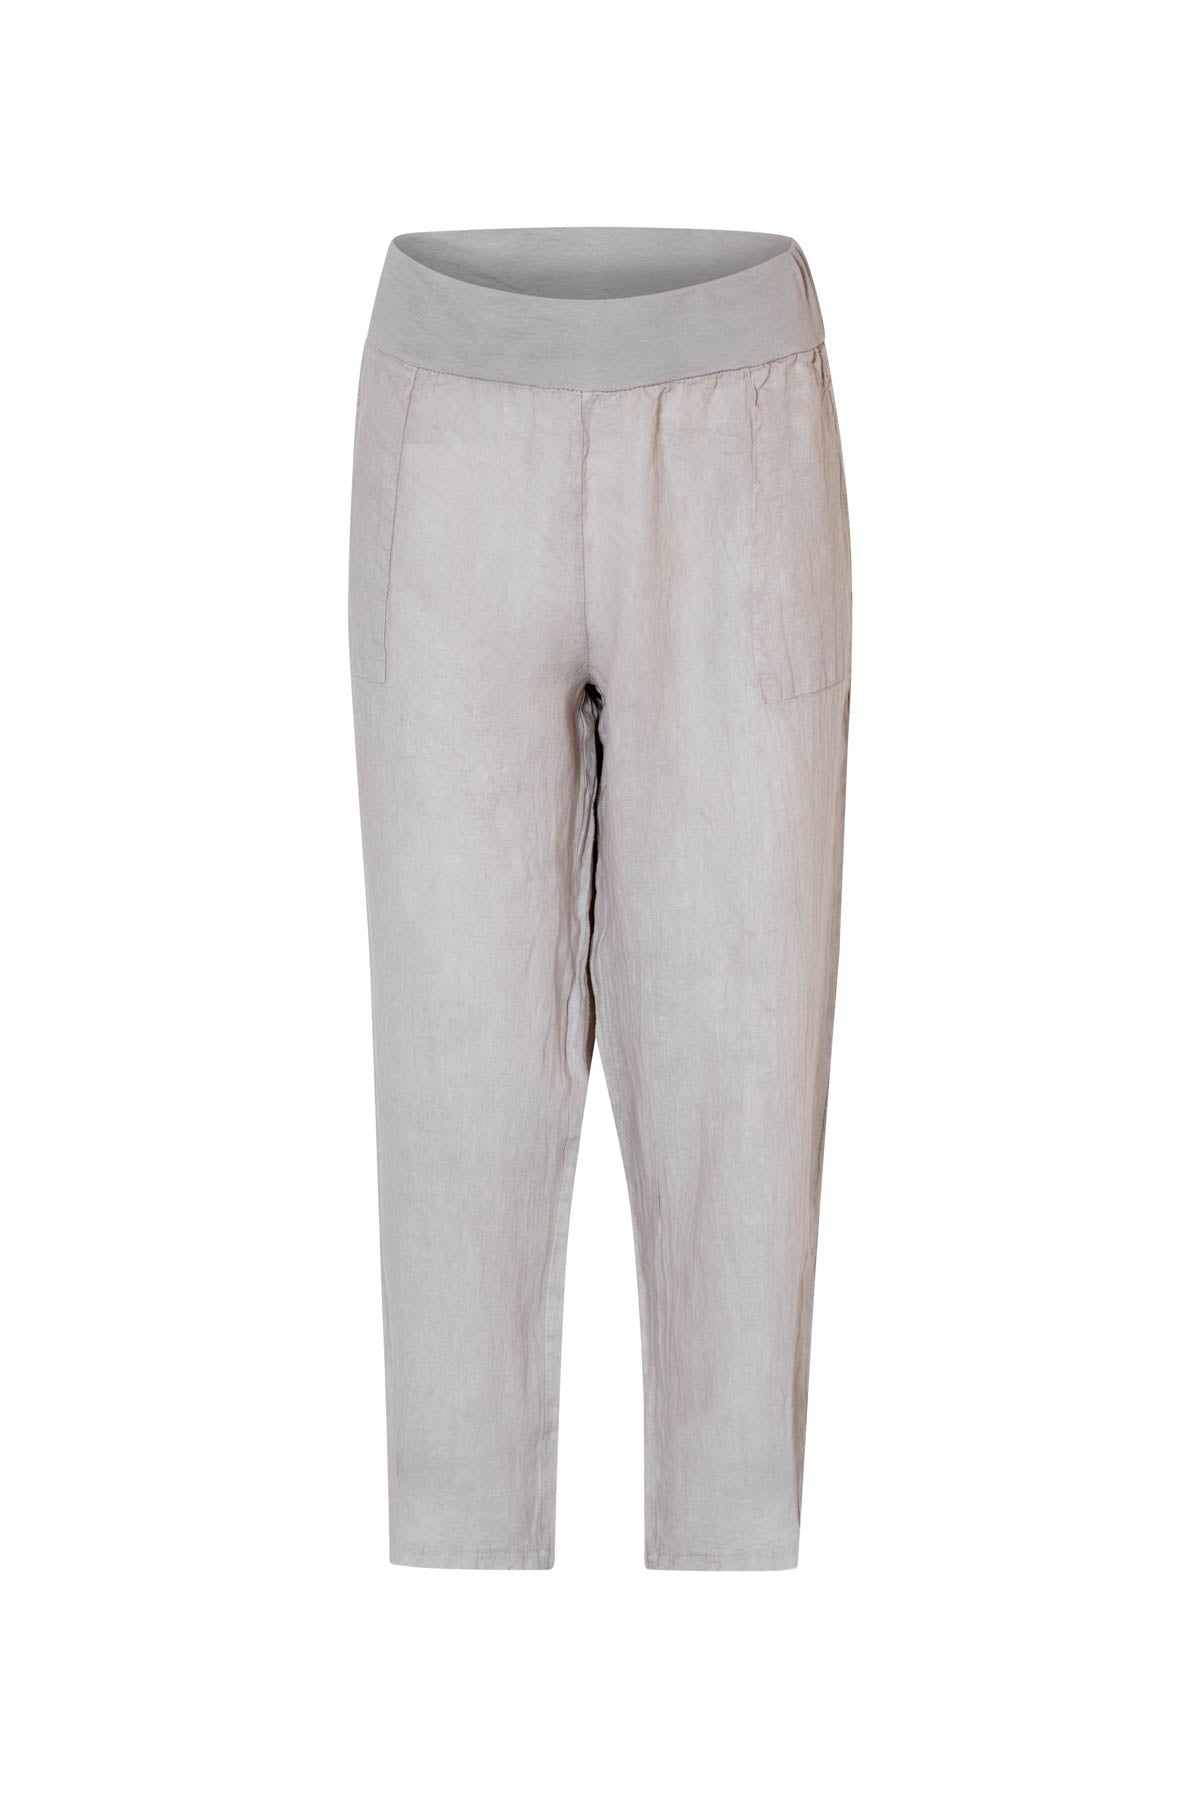 New Season Classic Linen Pants – DonnaDonna.com.au